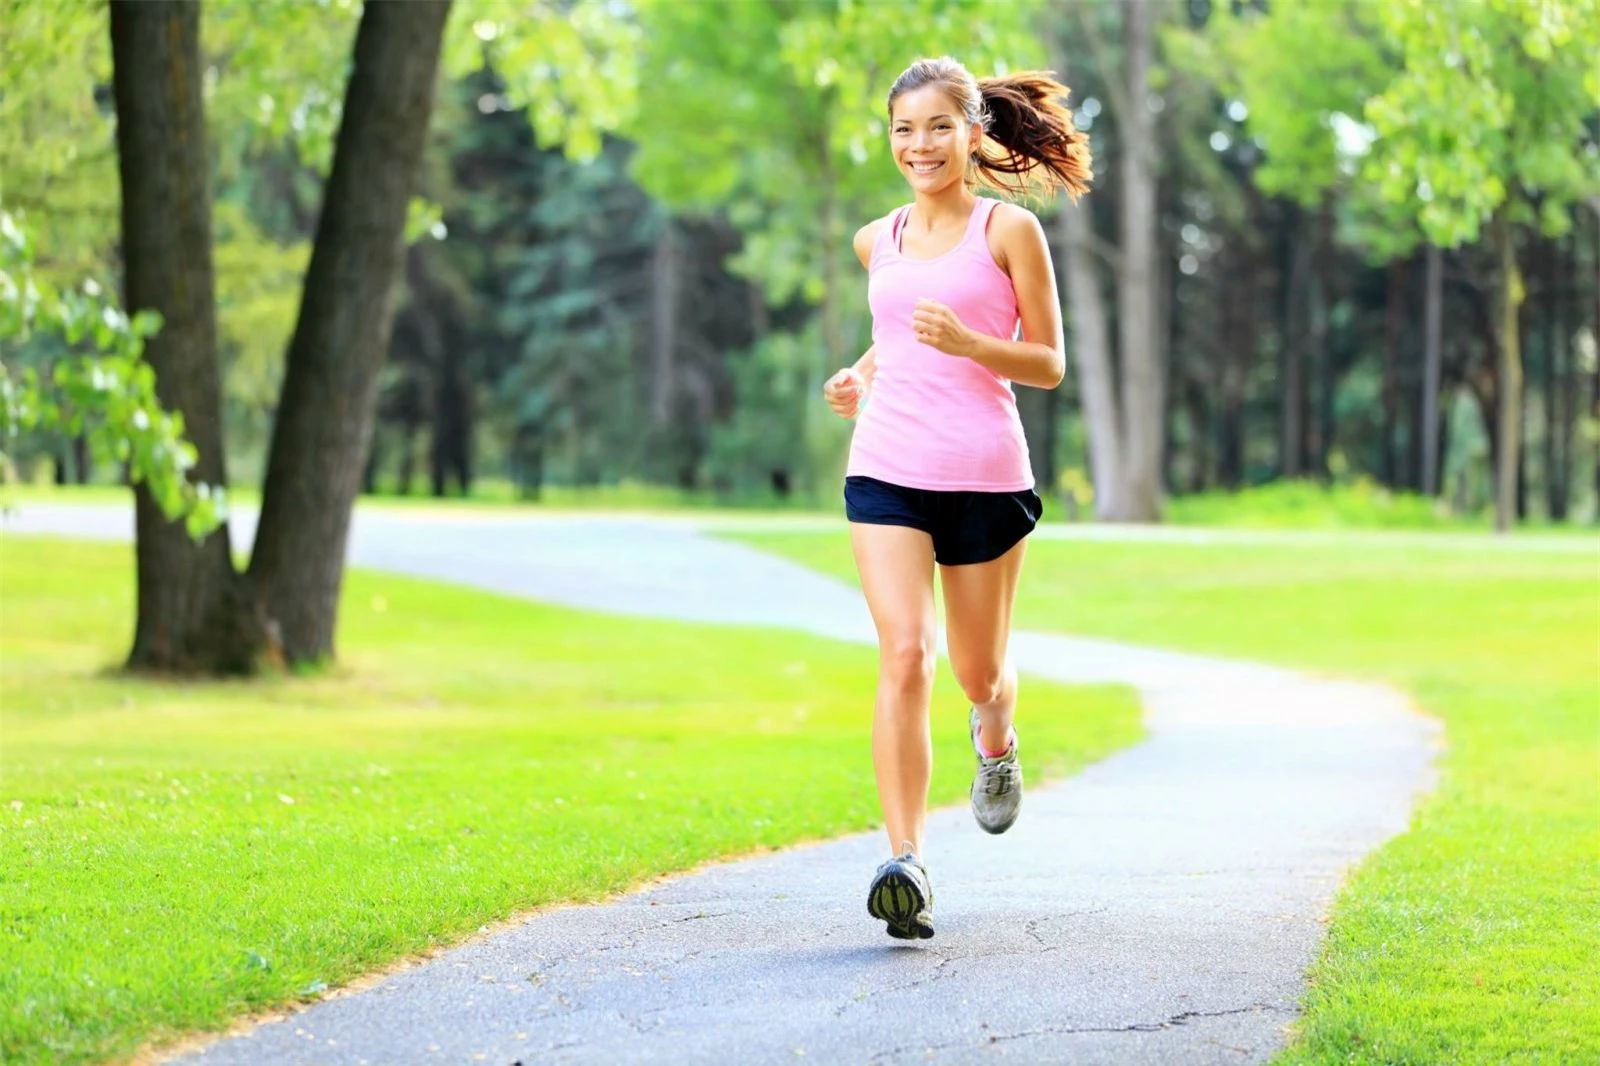 Tại sao chạy bộ buổi chiều lại tốt hơn buổi sáng?